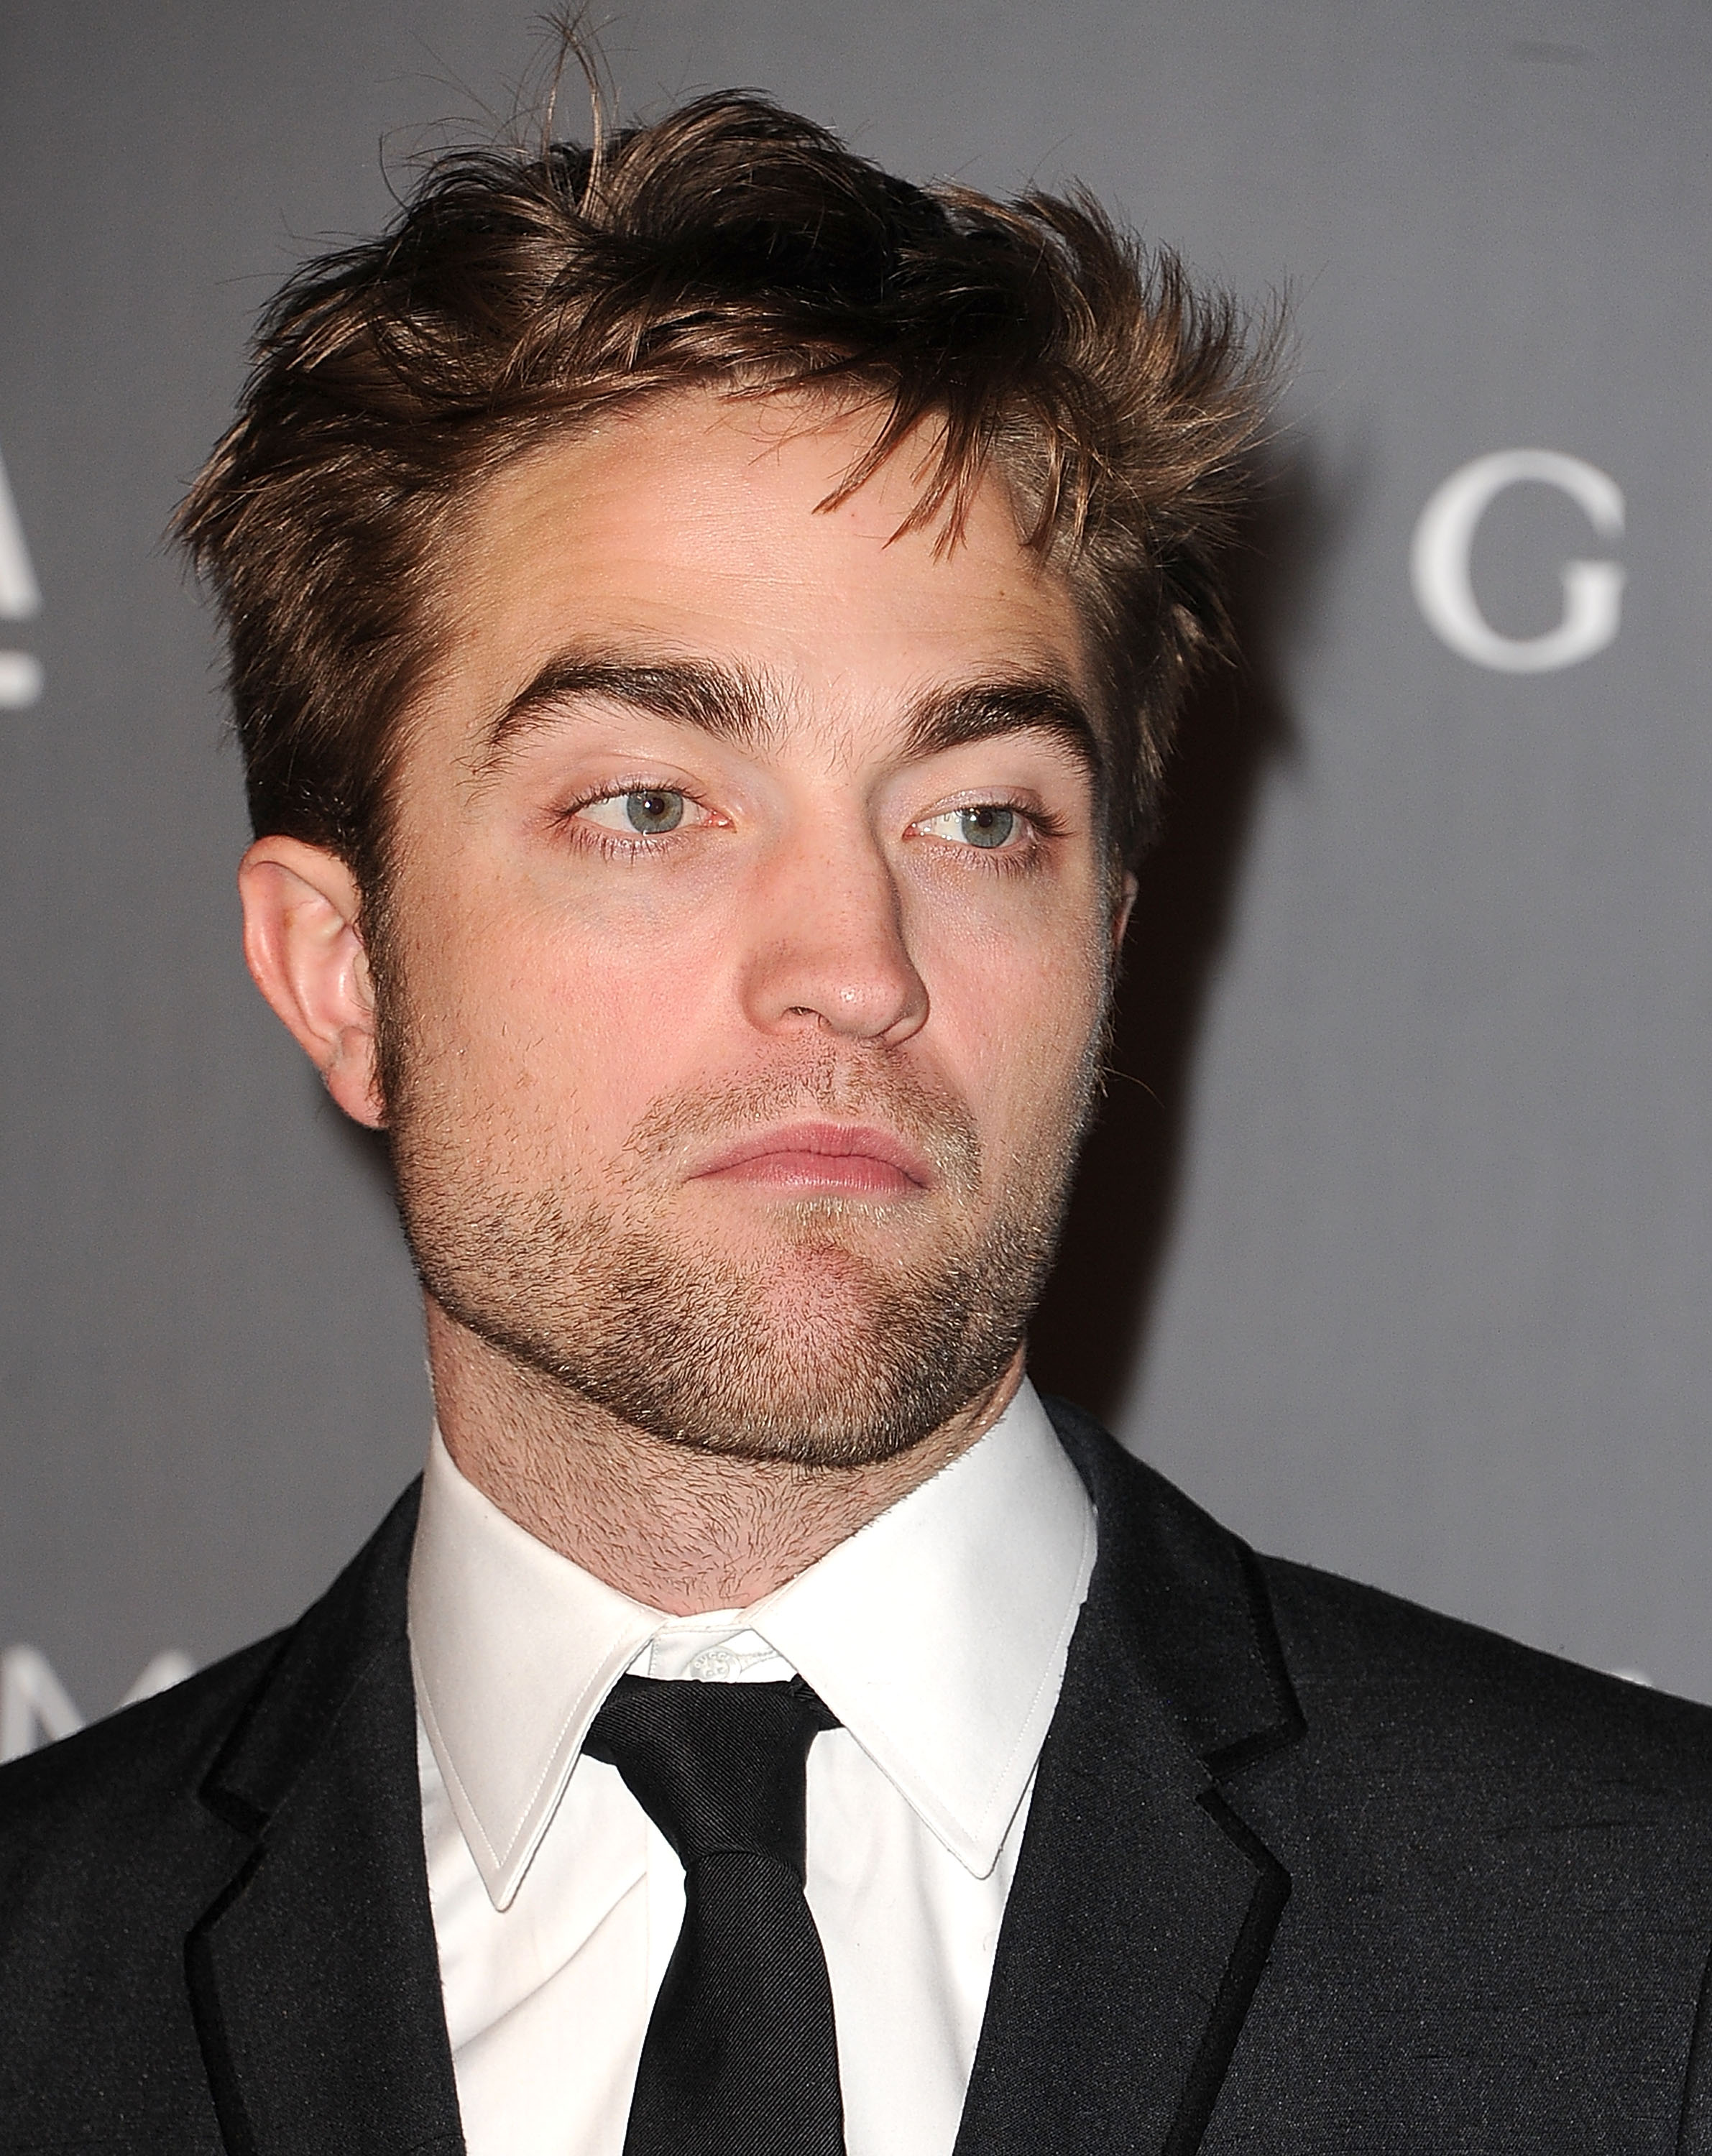 New/Old Pics of Robert Pattinson at the LACMA 2012 Gala | Thinking of Rob